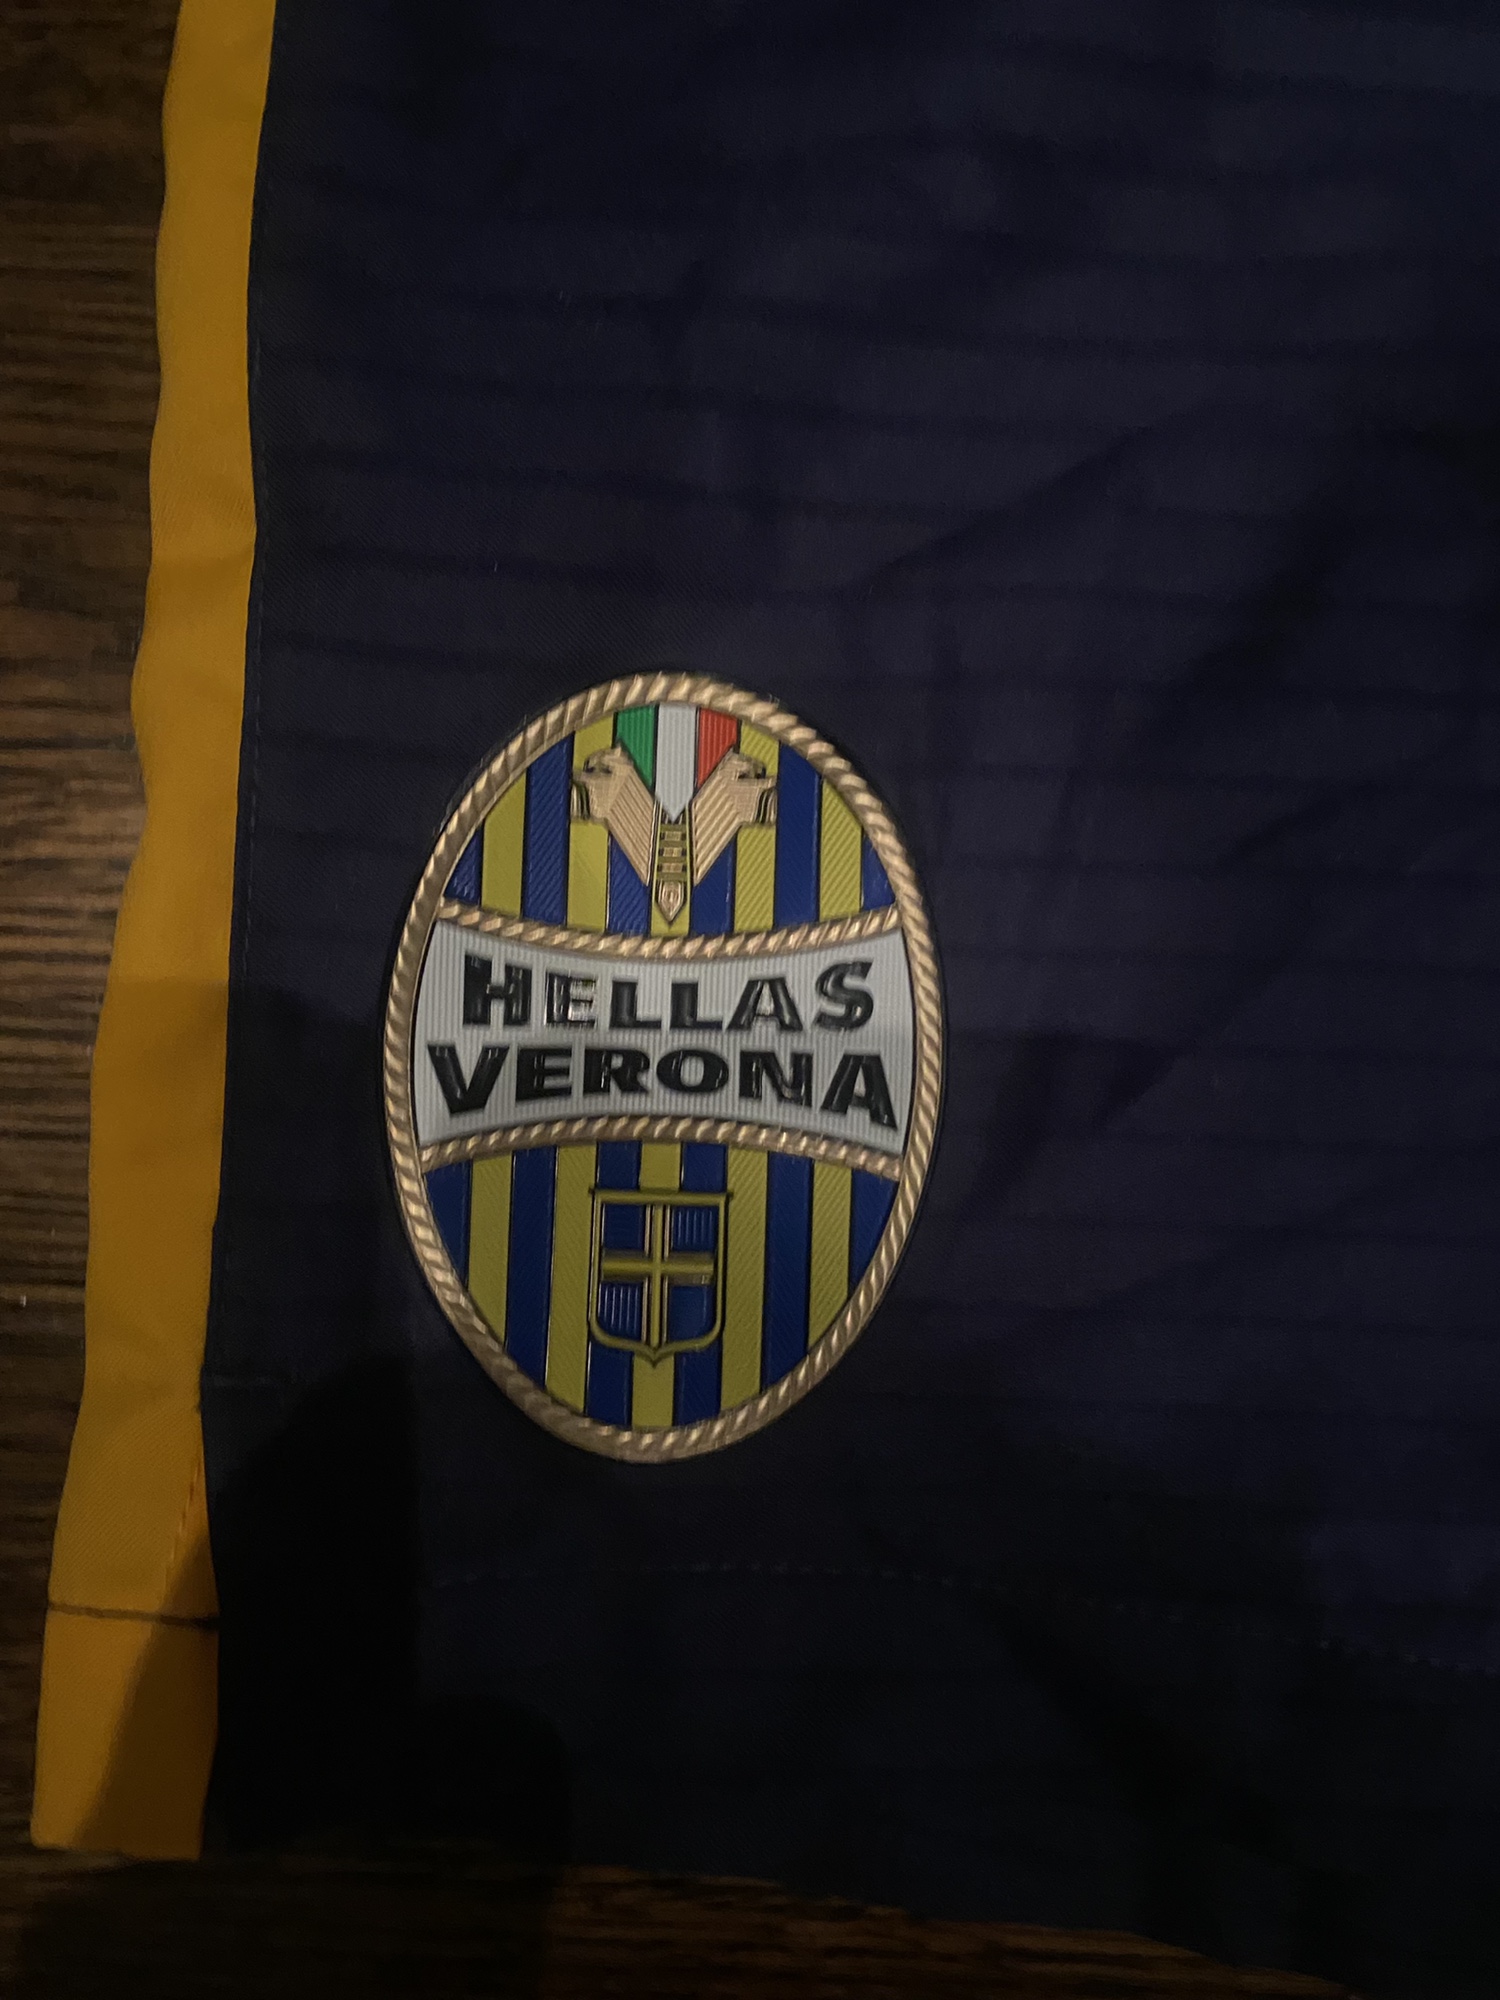 Hellas Verona F.C. Wallpapers